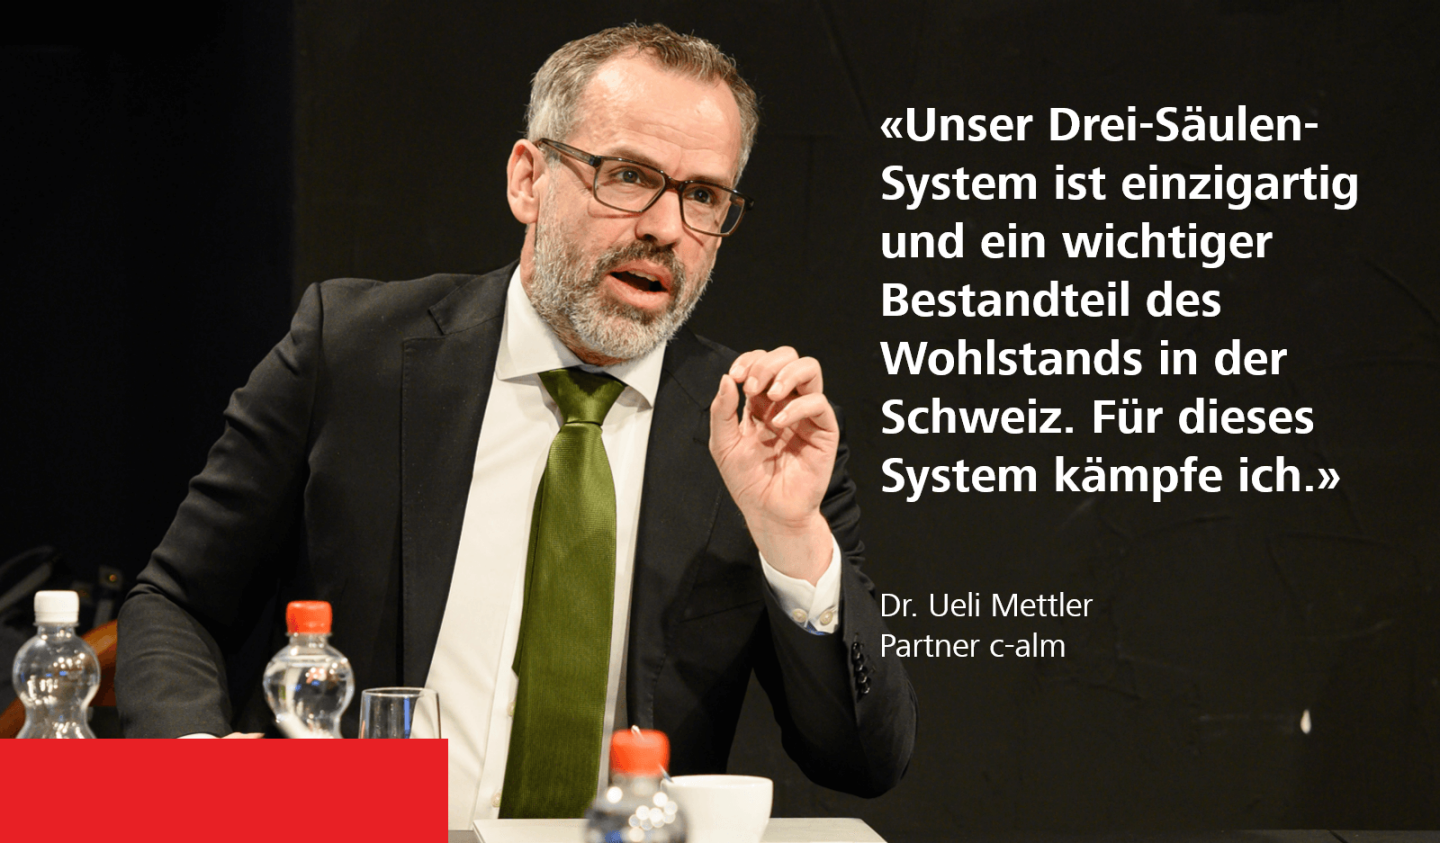 «Unser Drei-Säulen-System ist einzigartig und ein wichtiger Bestandteil des Wohlstands in der Schweiz. Für dieses System kämpfe ich.» - Dr. Ueli Mettler, Partner c-alm